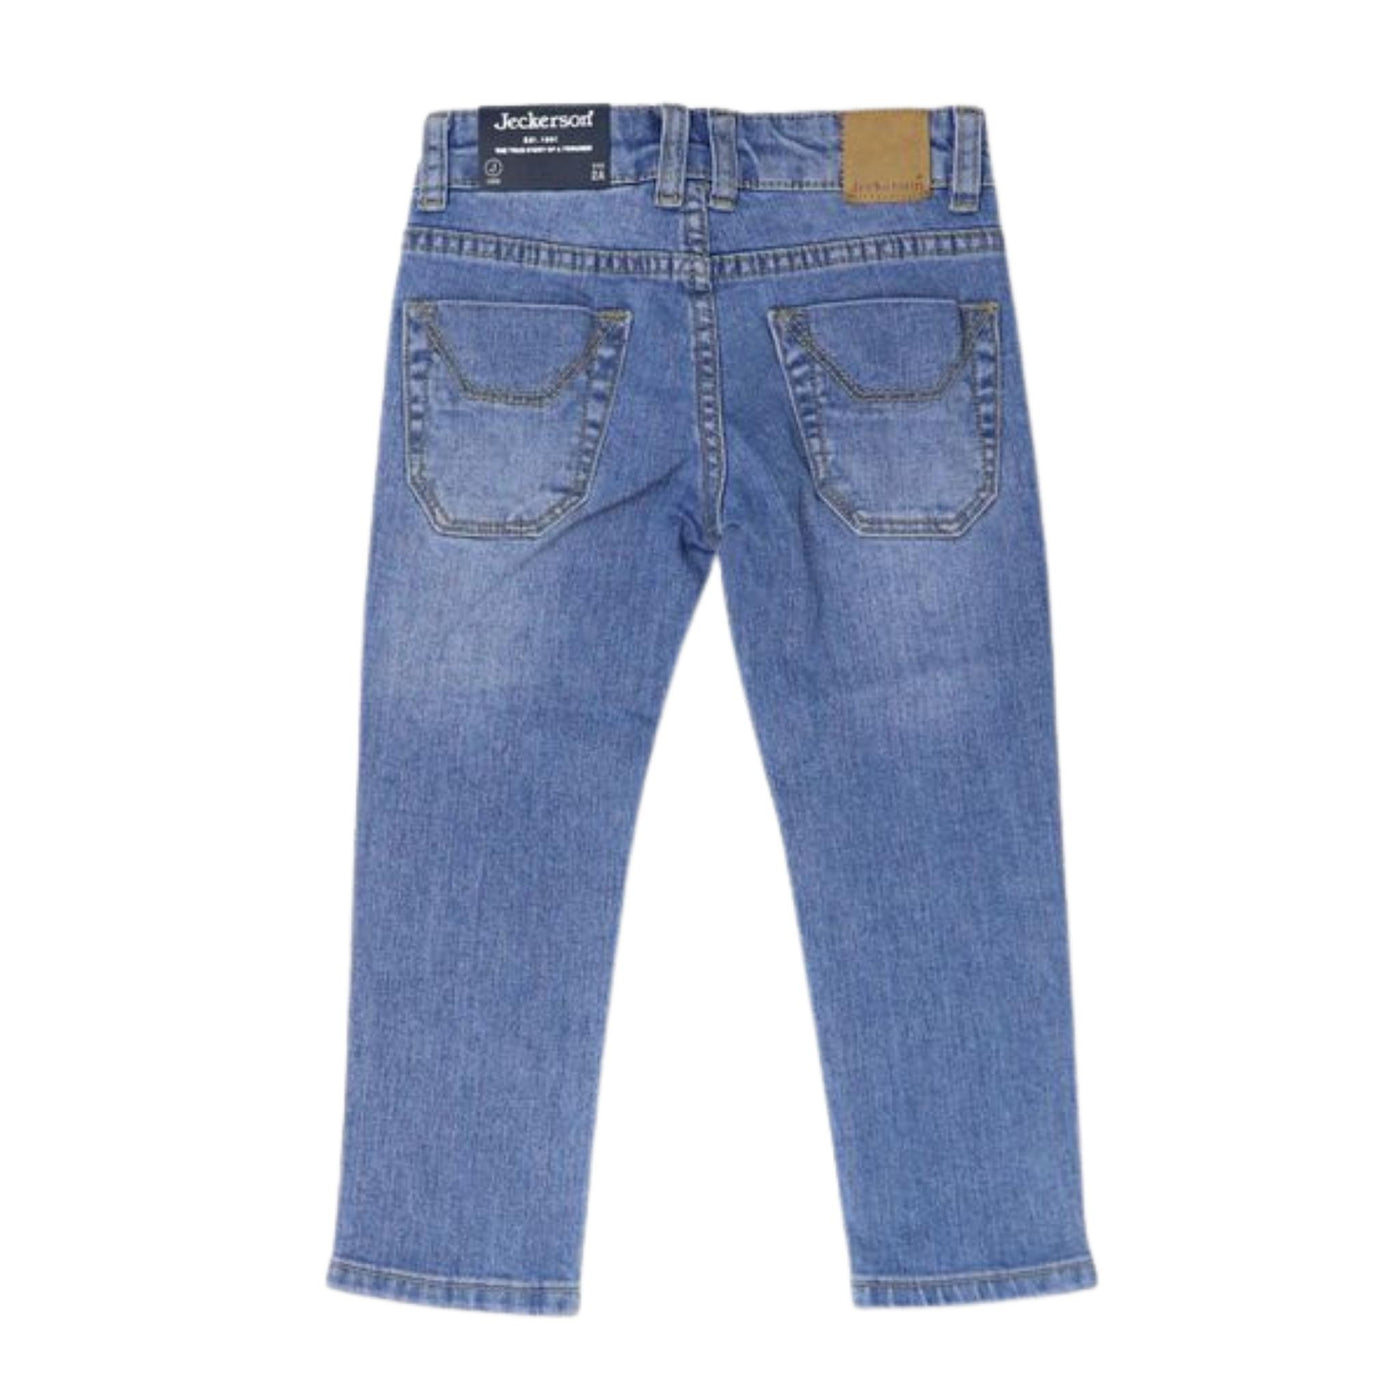 jeans bambino jeckerson cinque tasche con logo retro